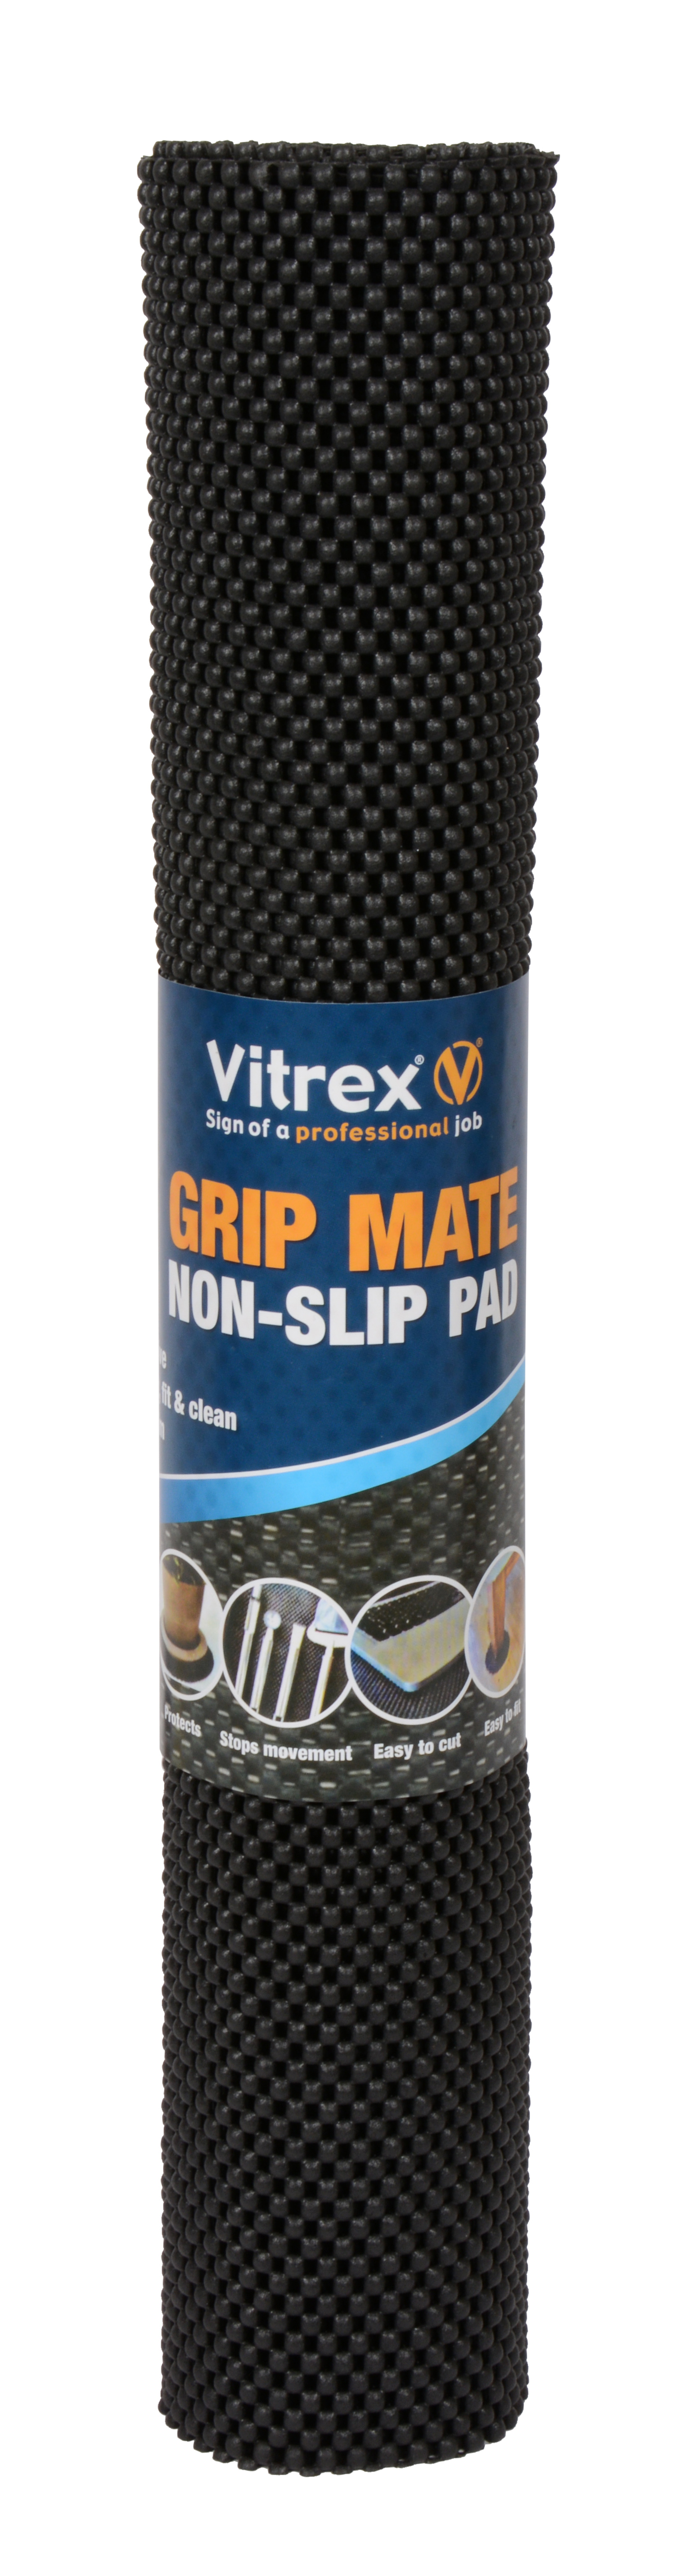 Grip Mate Non-Slip Pad